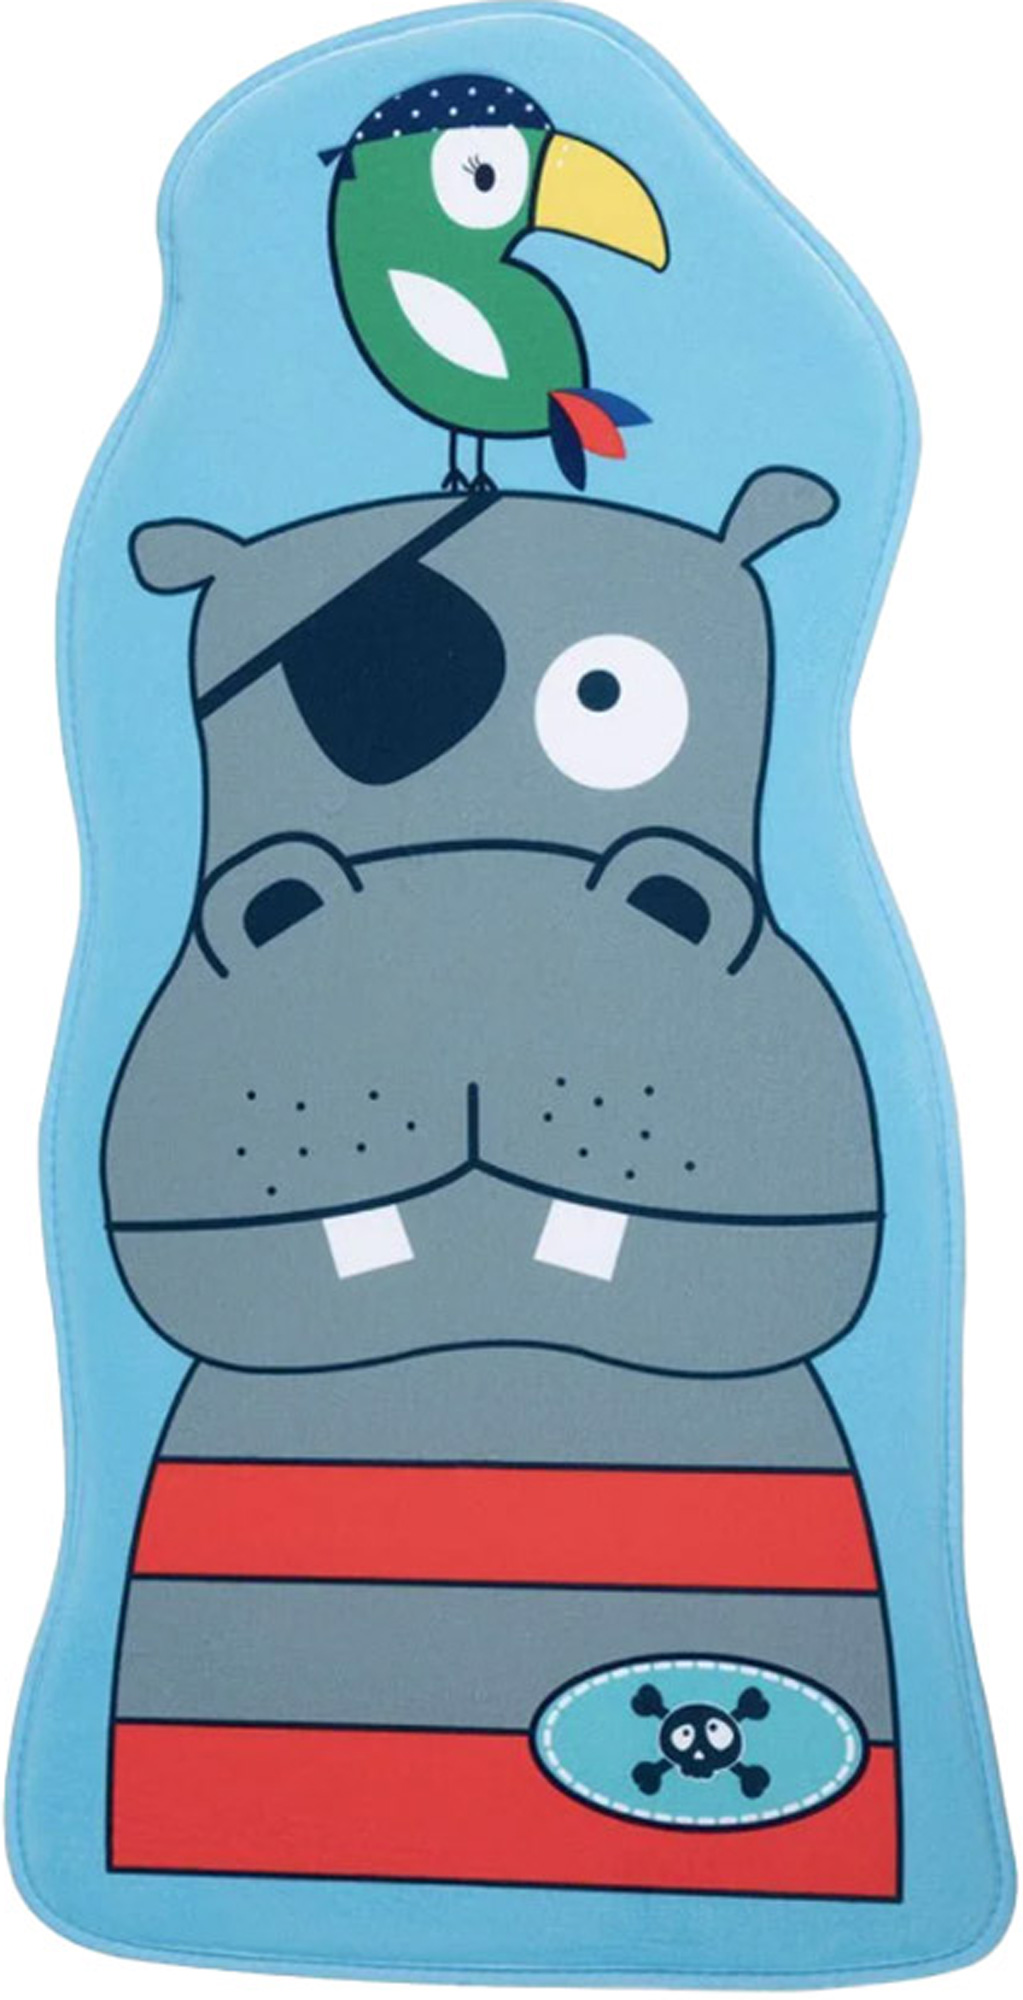 Kinderteppich Milena Hippo Pastellfarben niedlich Freiform 60 x 60cm